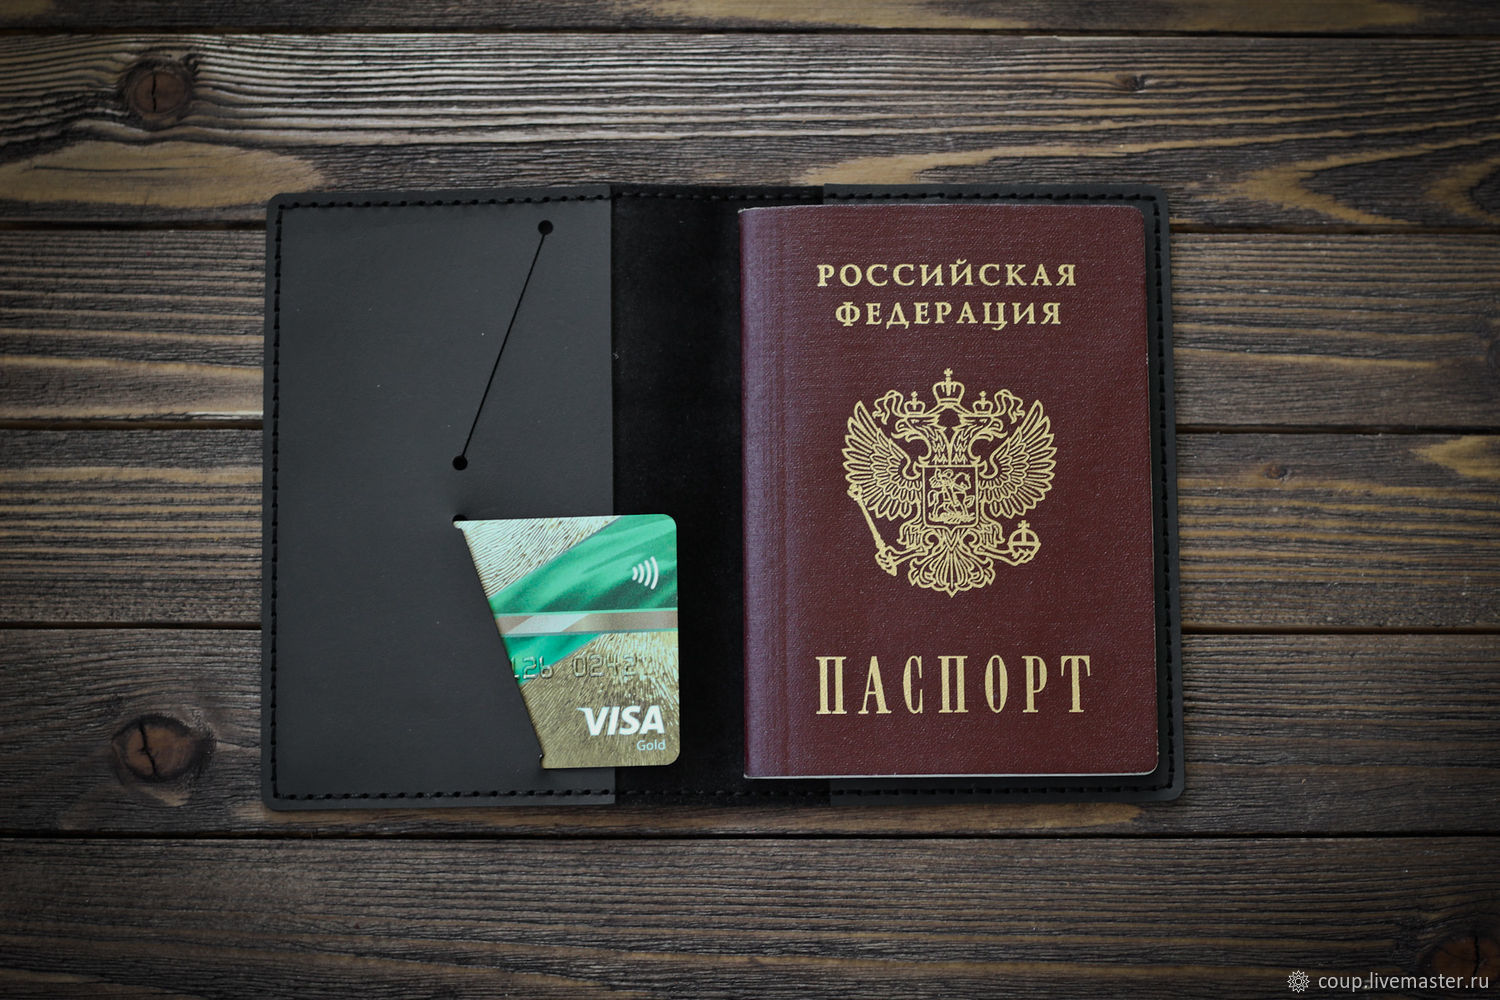 Изготовление обложек для паспорта как идея для бизнеса